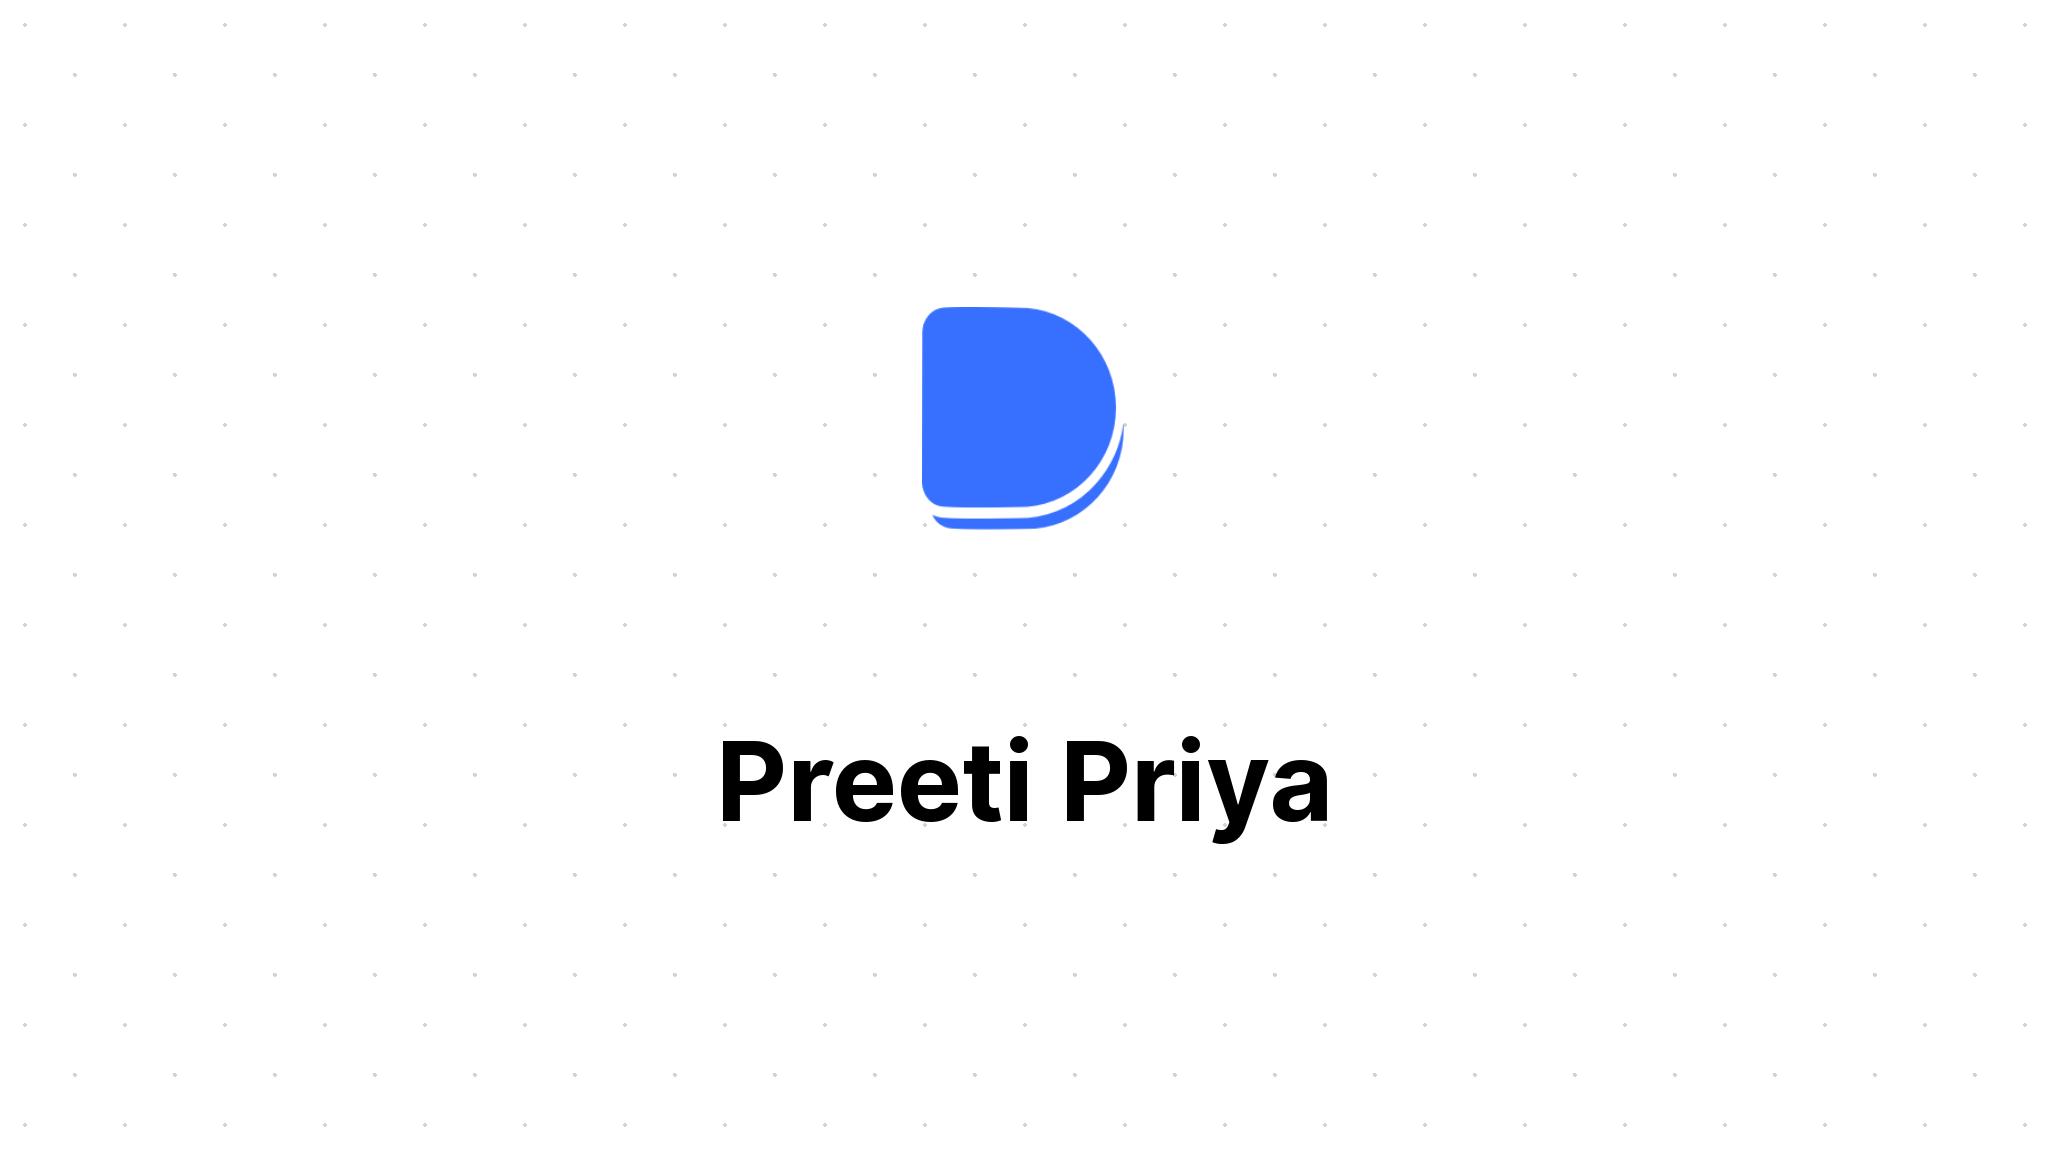 Priya and pretti